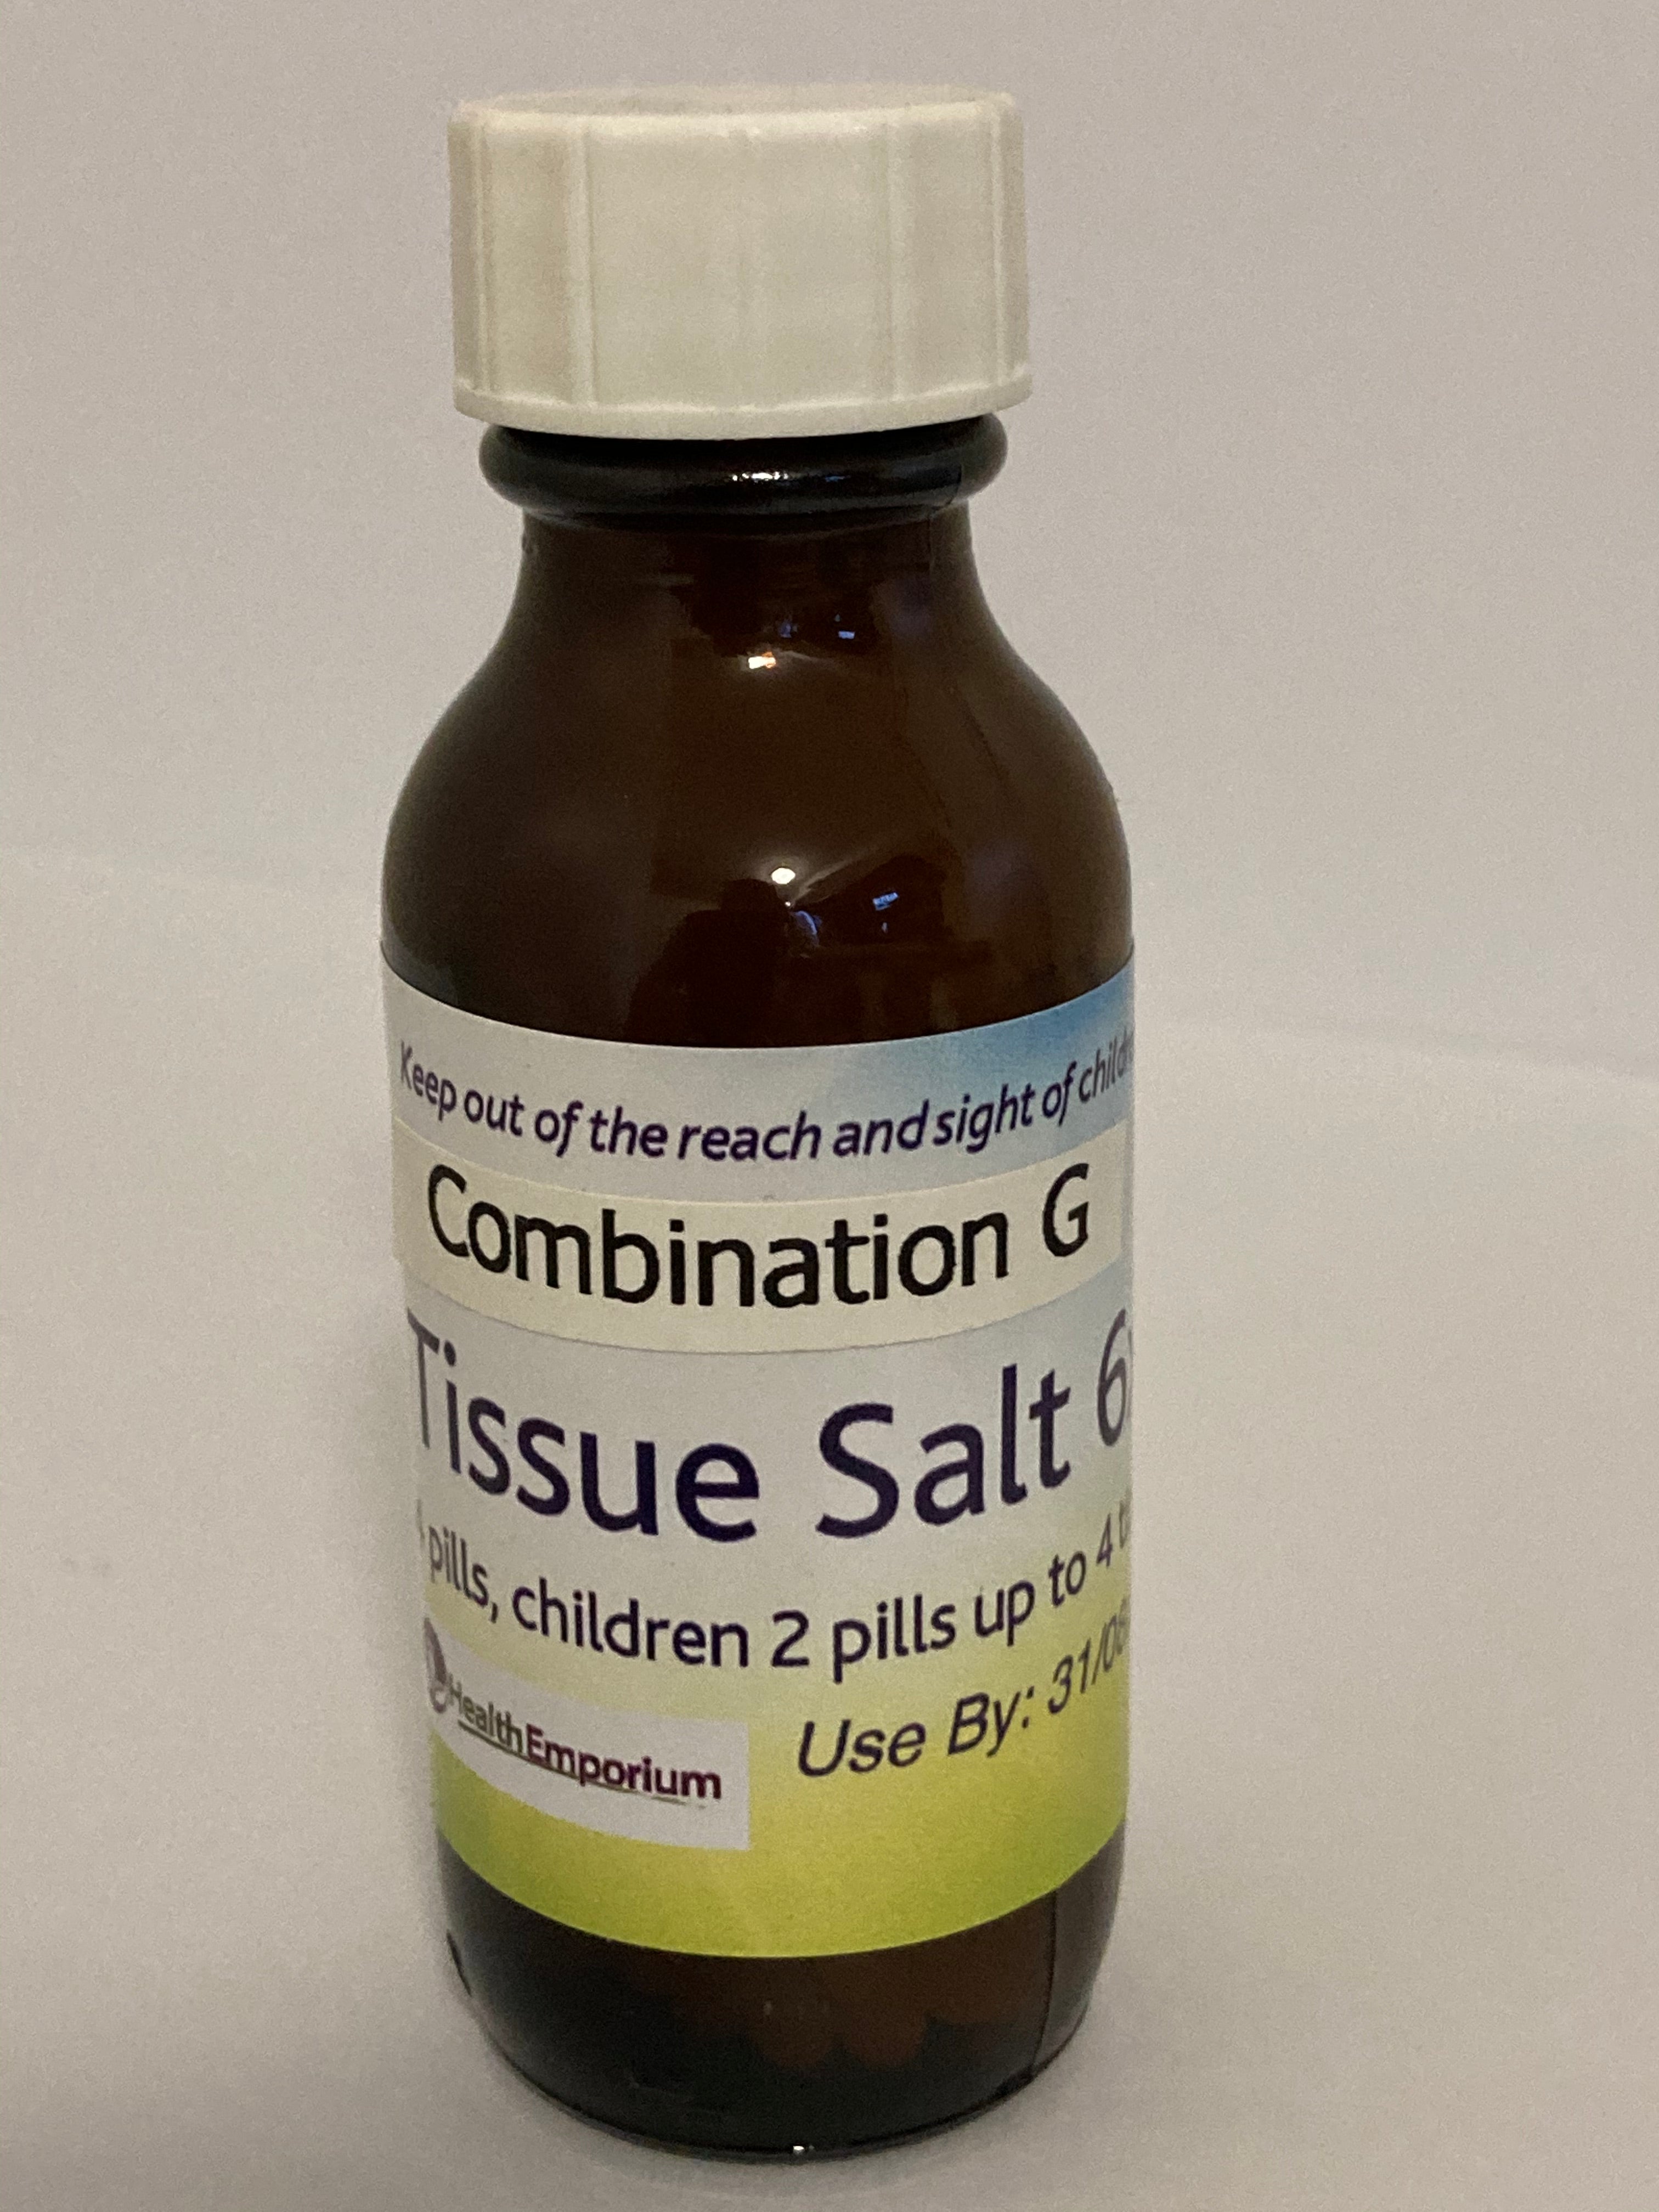 Combination G Tissue Salt